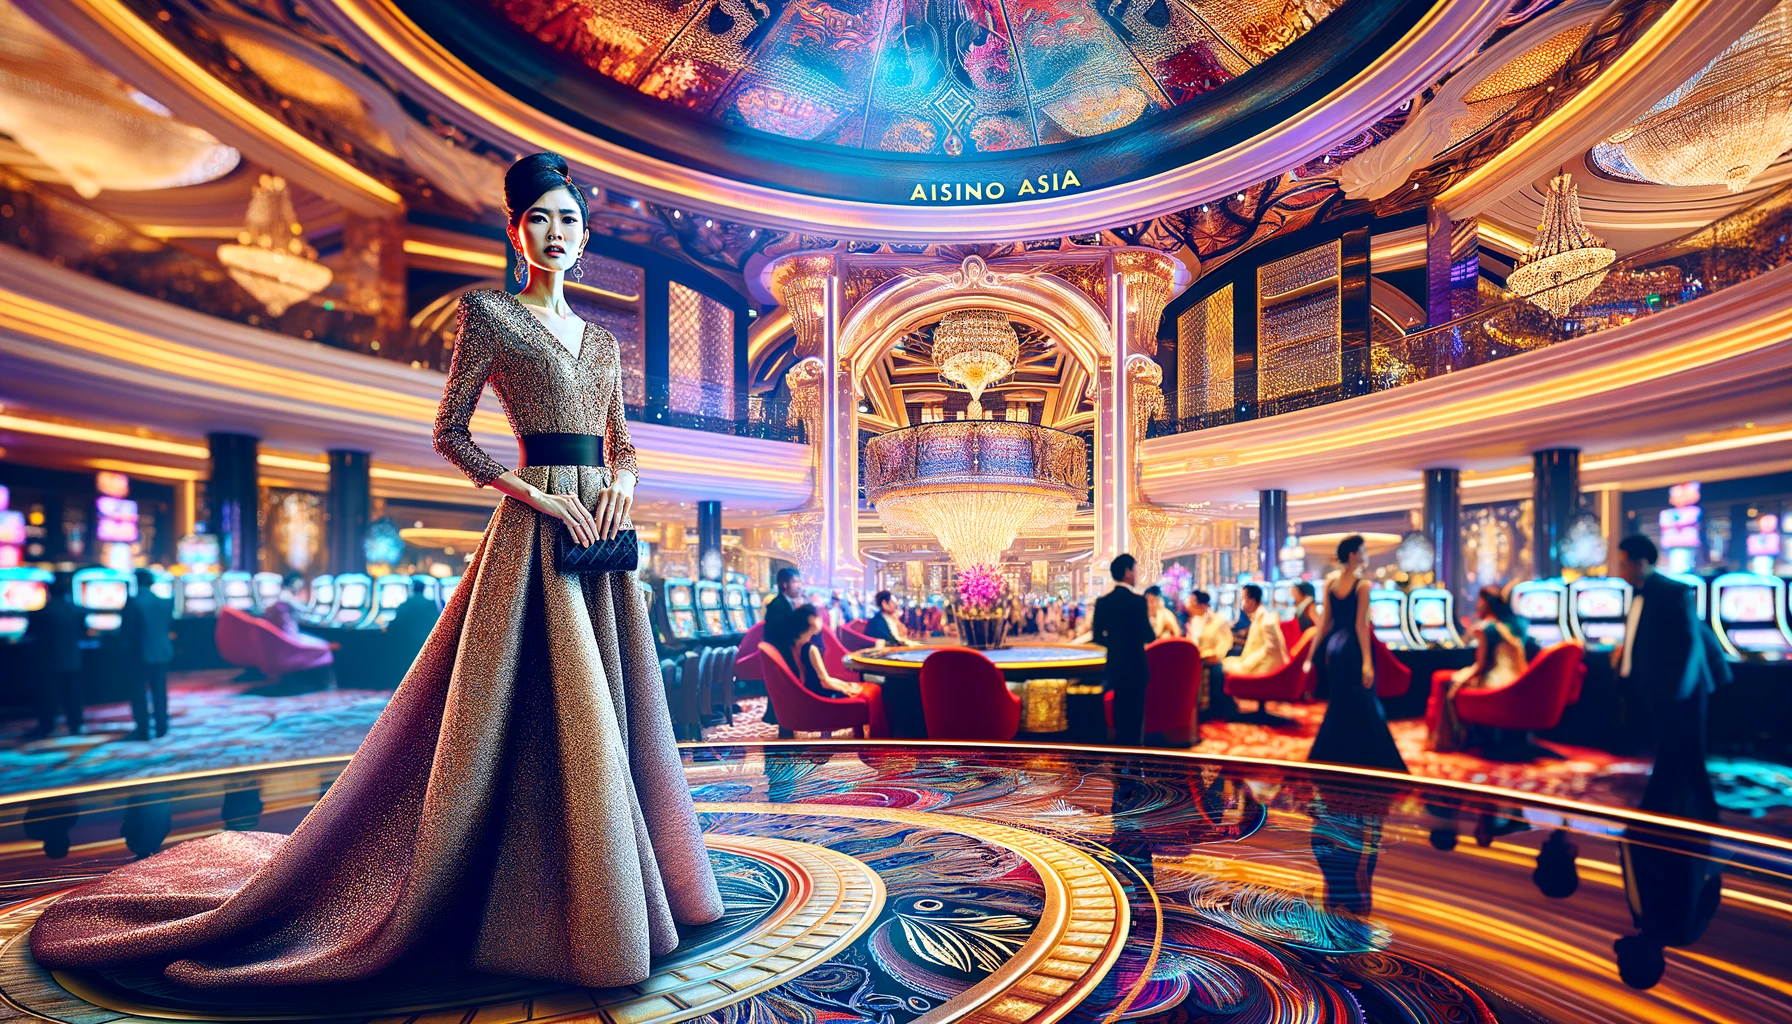 Chào mừng bạn đến với Best Casino Asia - betcasino.asia!